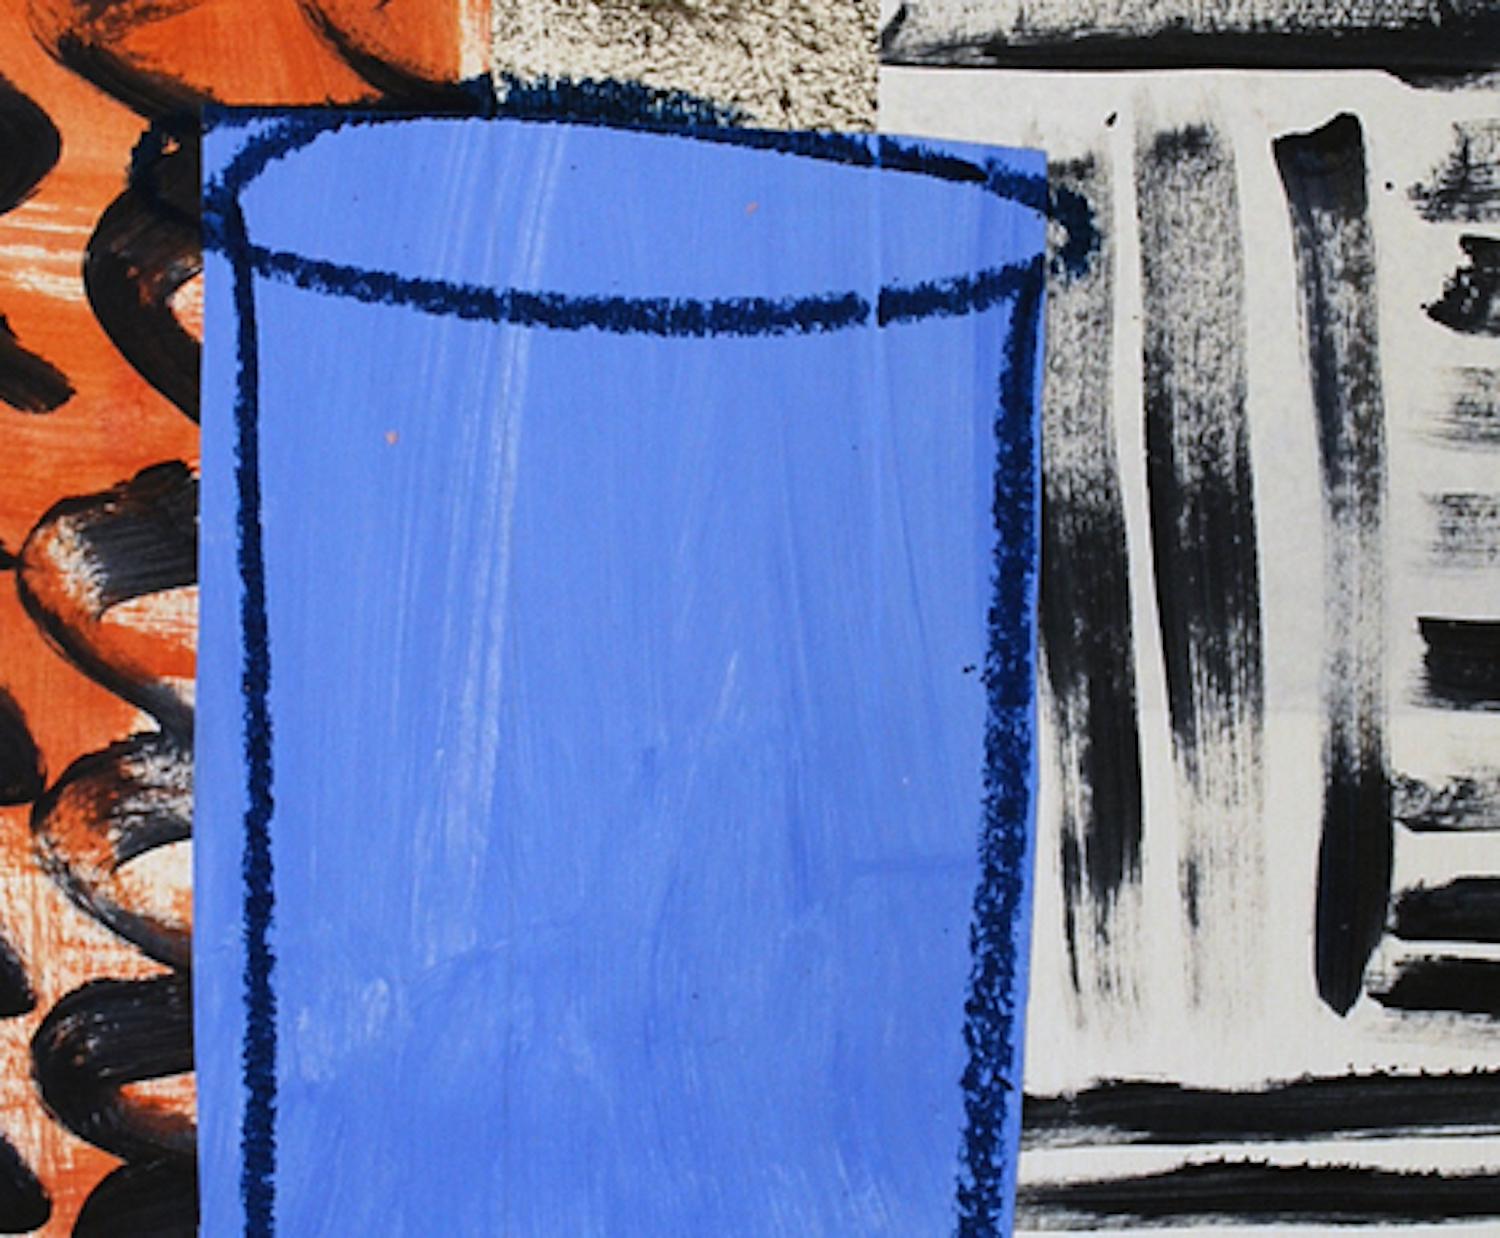 Jenny Balmer
Urne bleue, Tan et Noir
Peinture originale d'une nature morte
Techniques mixtes sur papier
Taille de la monture : H 50cm x L 40cm x P 0.1cm
Vendu sans cadre
Veuillez noter que les images in situ sont purement indicatives de l'aspect